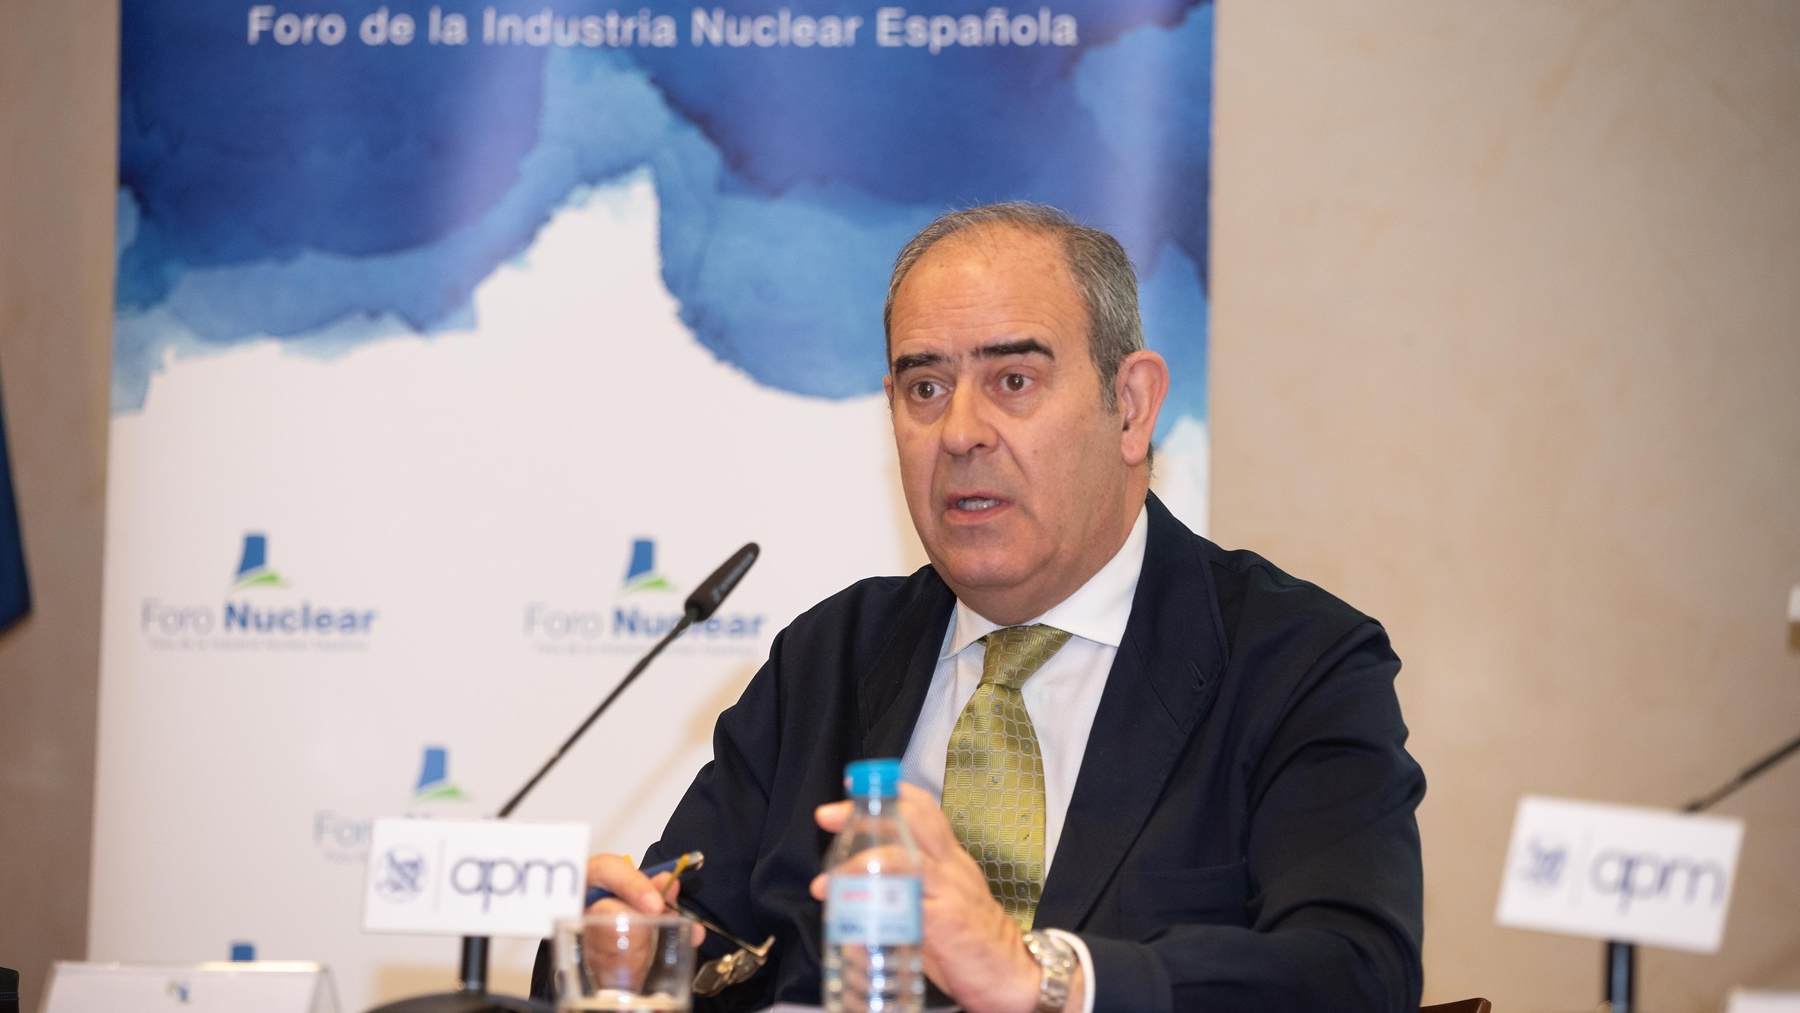 Ignacio Araluce, presidente del Foro Nuclear